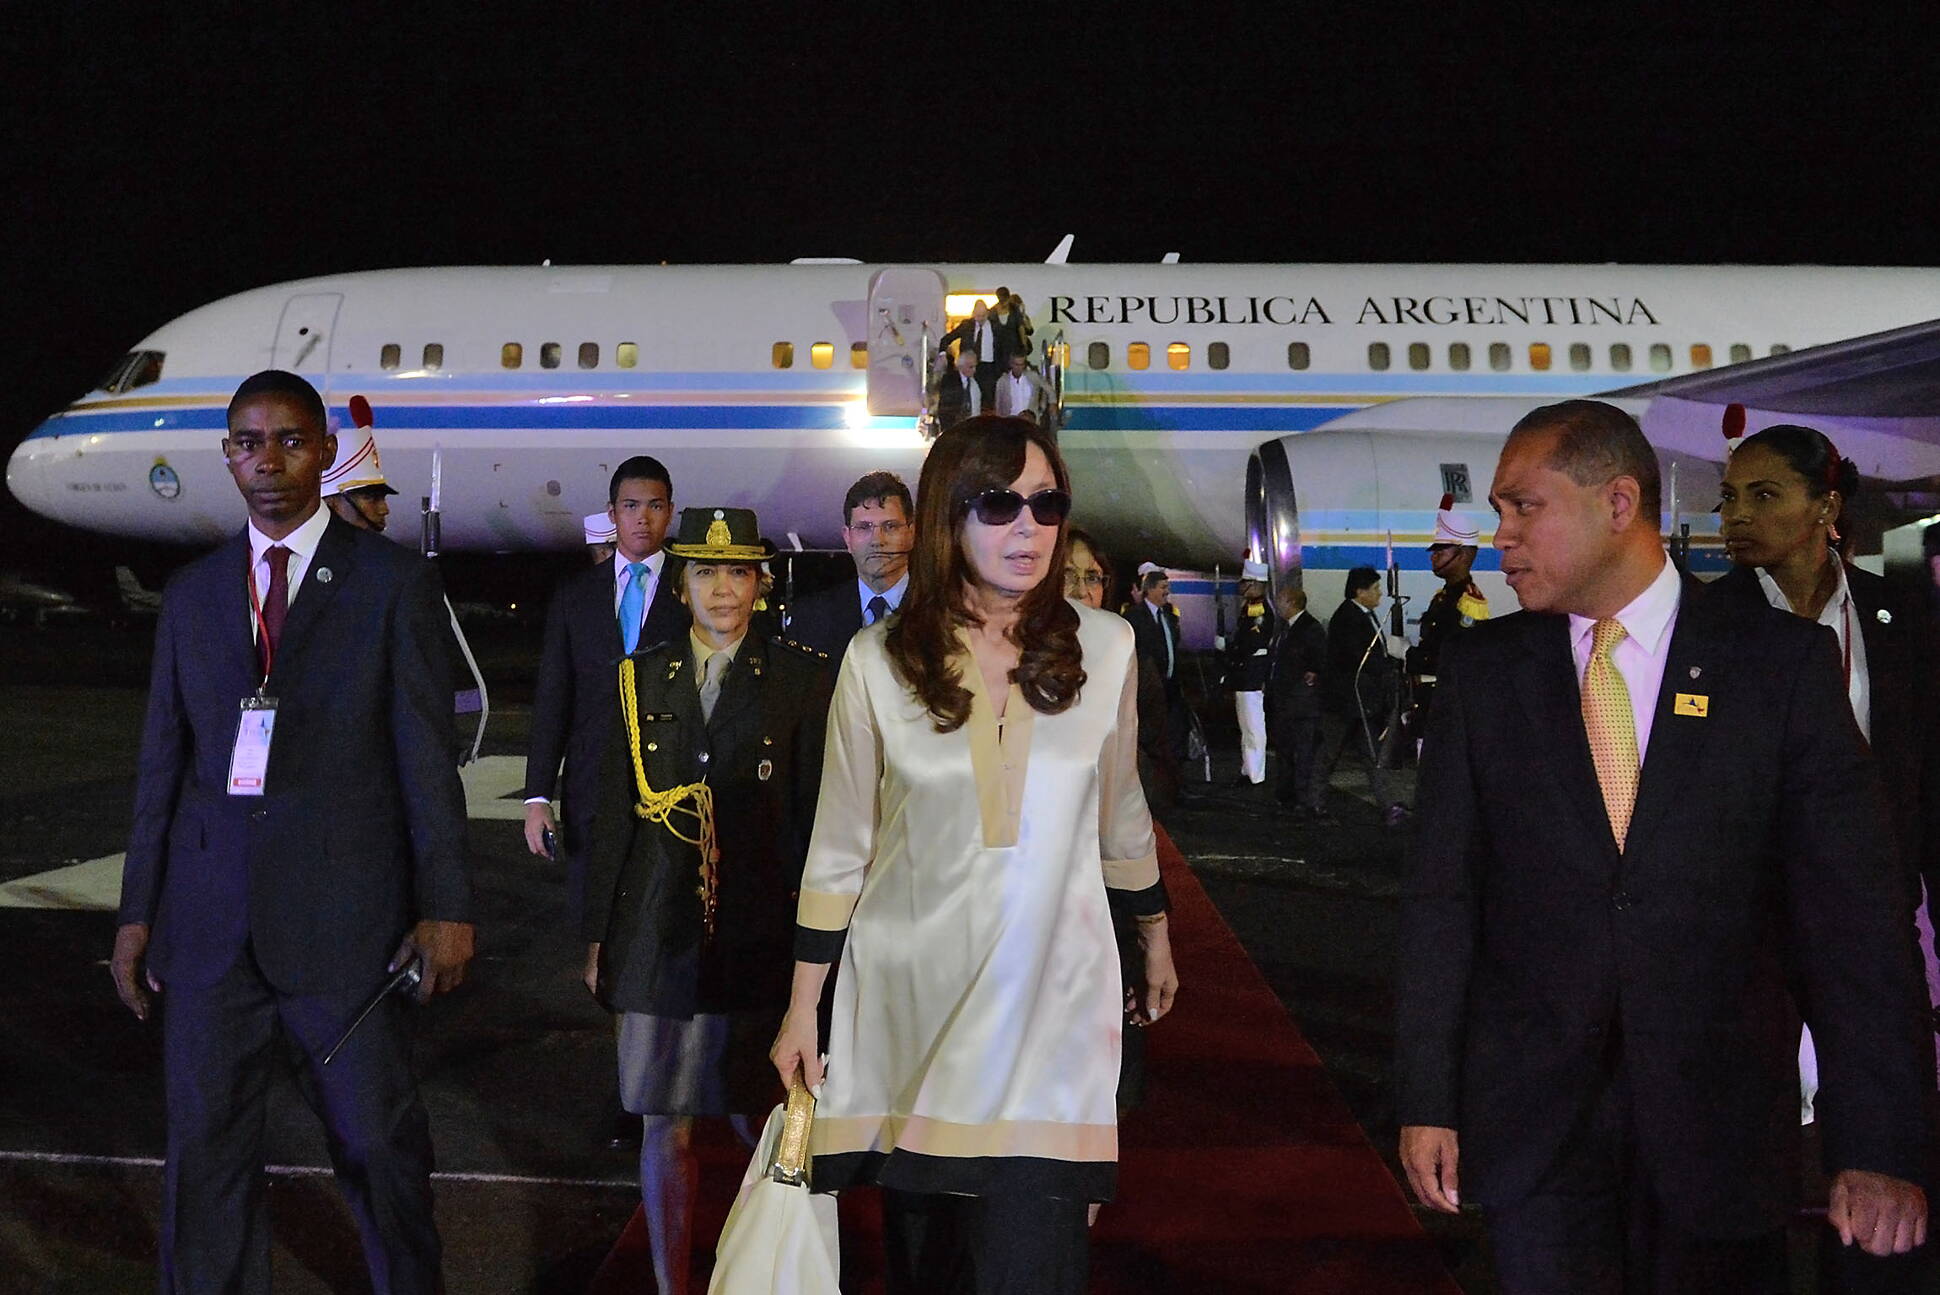 La Presidenta arriba a la ciudad de Panamá